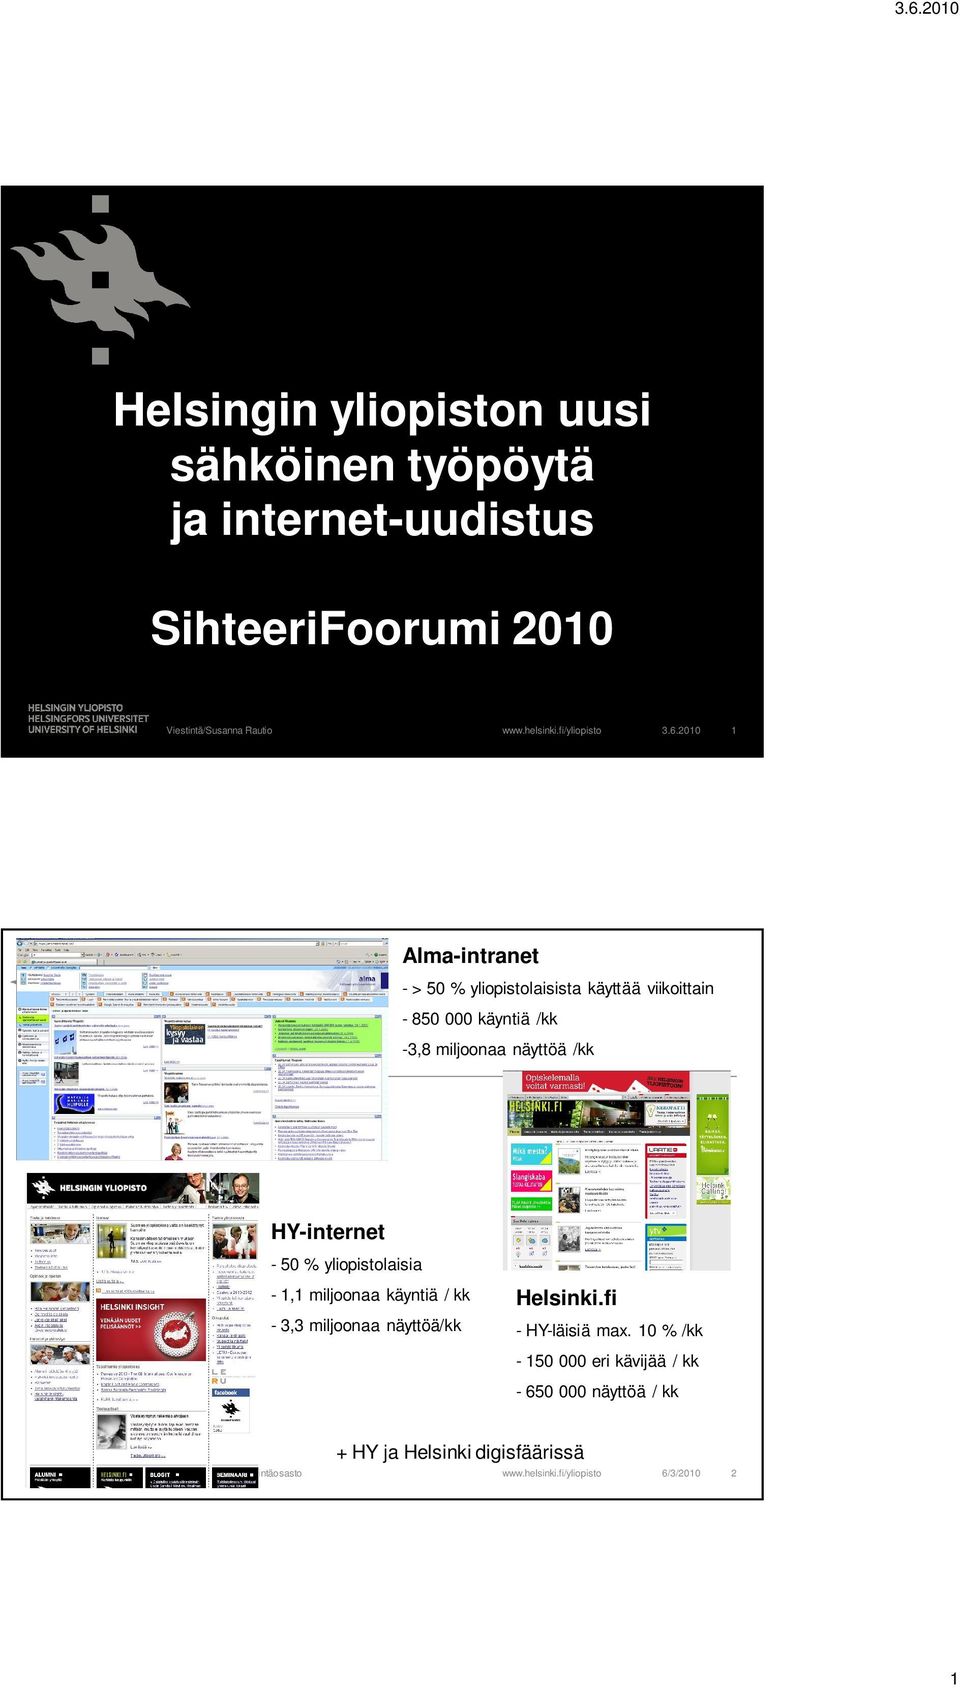 /kk HY-internet - 50 % yliopistolaisia - 1,1 miljoonaa käyntiä / kk - 3,3 miljoonaa näyttöä/kk Helsinki.